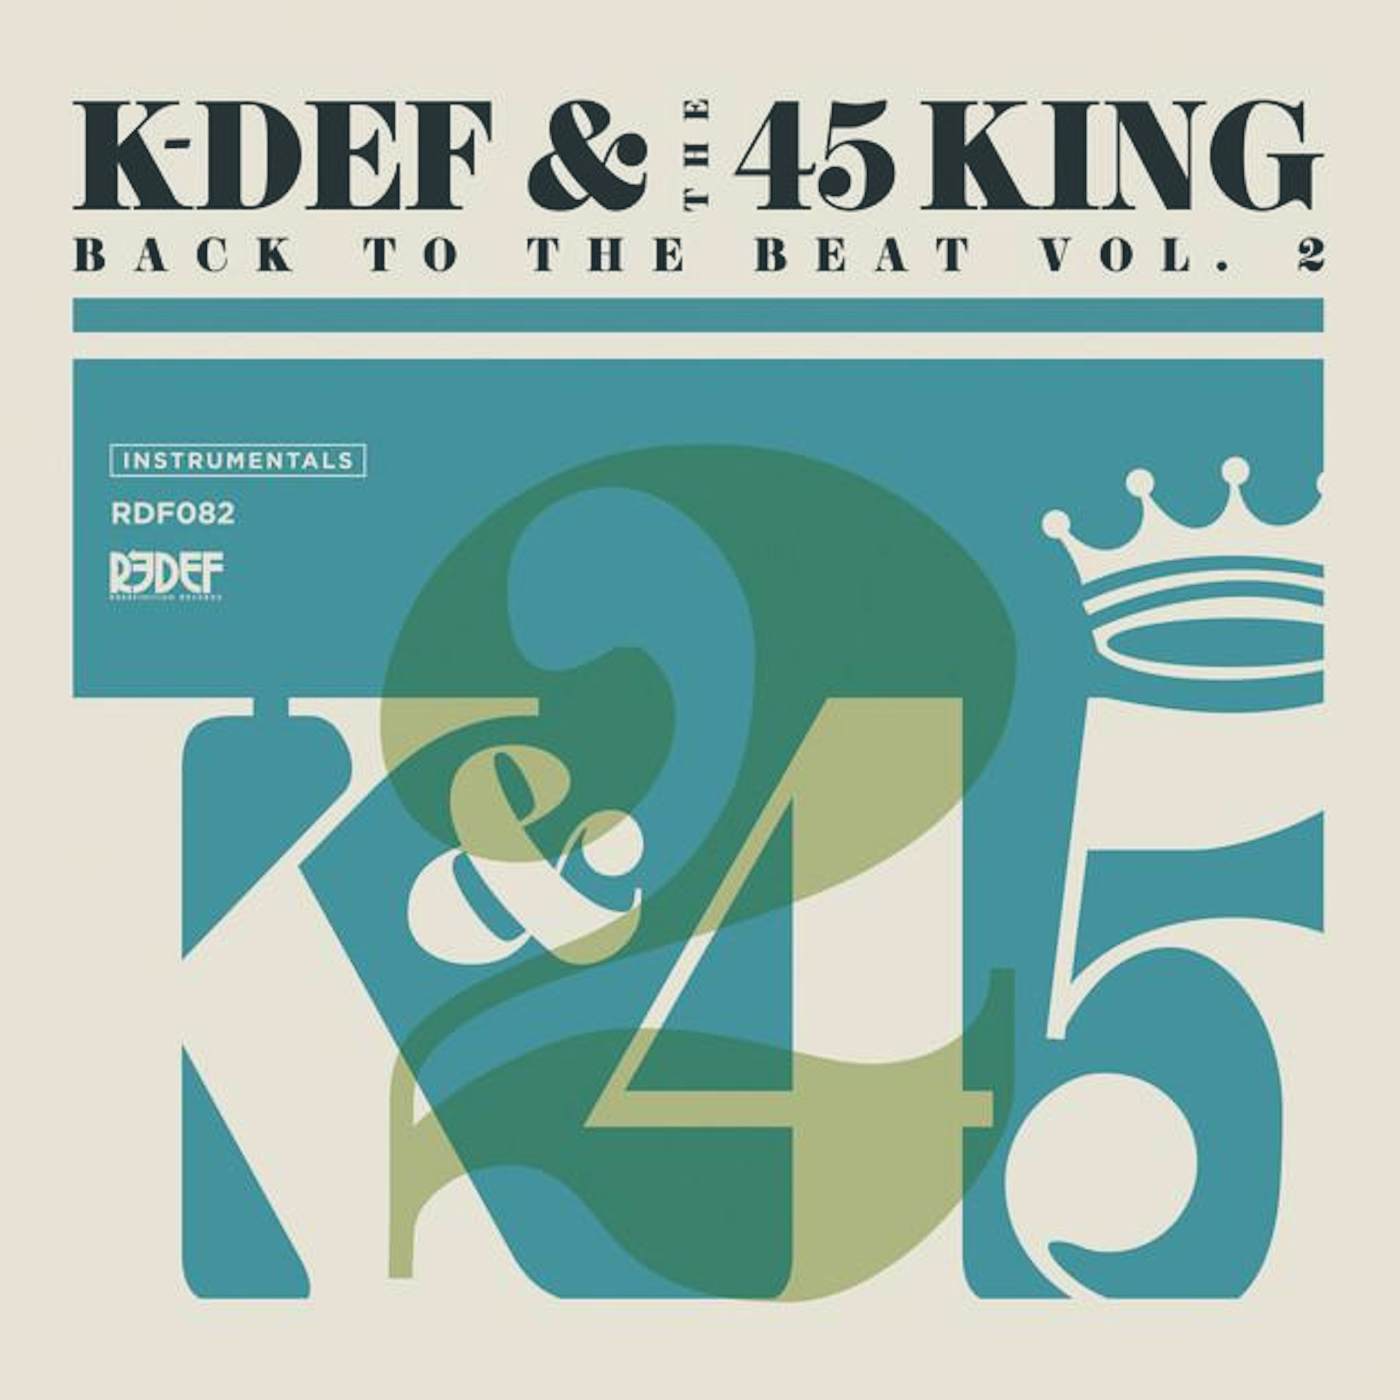 K-Def & 45 King